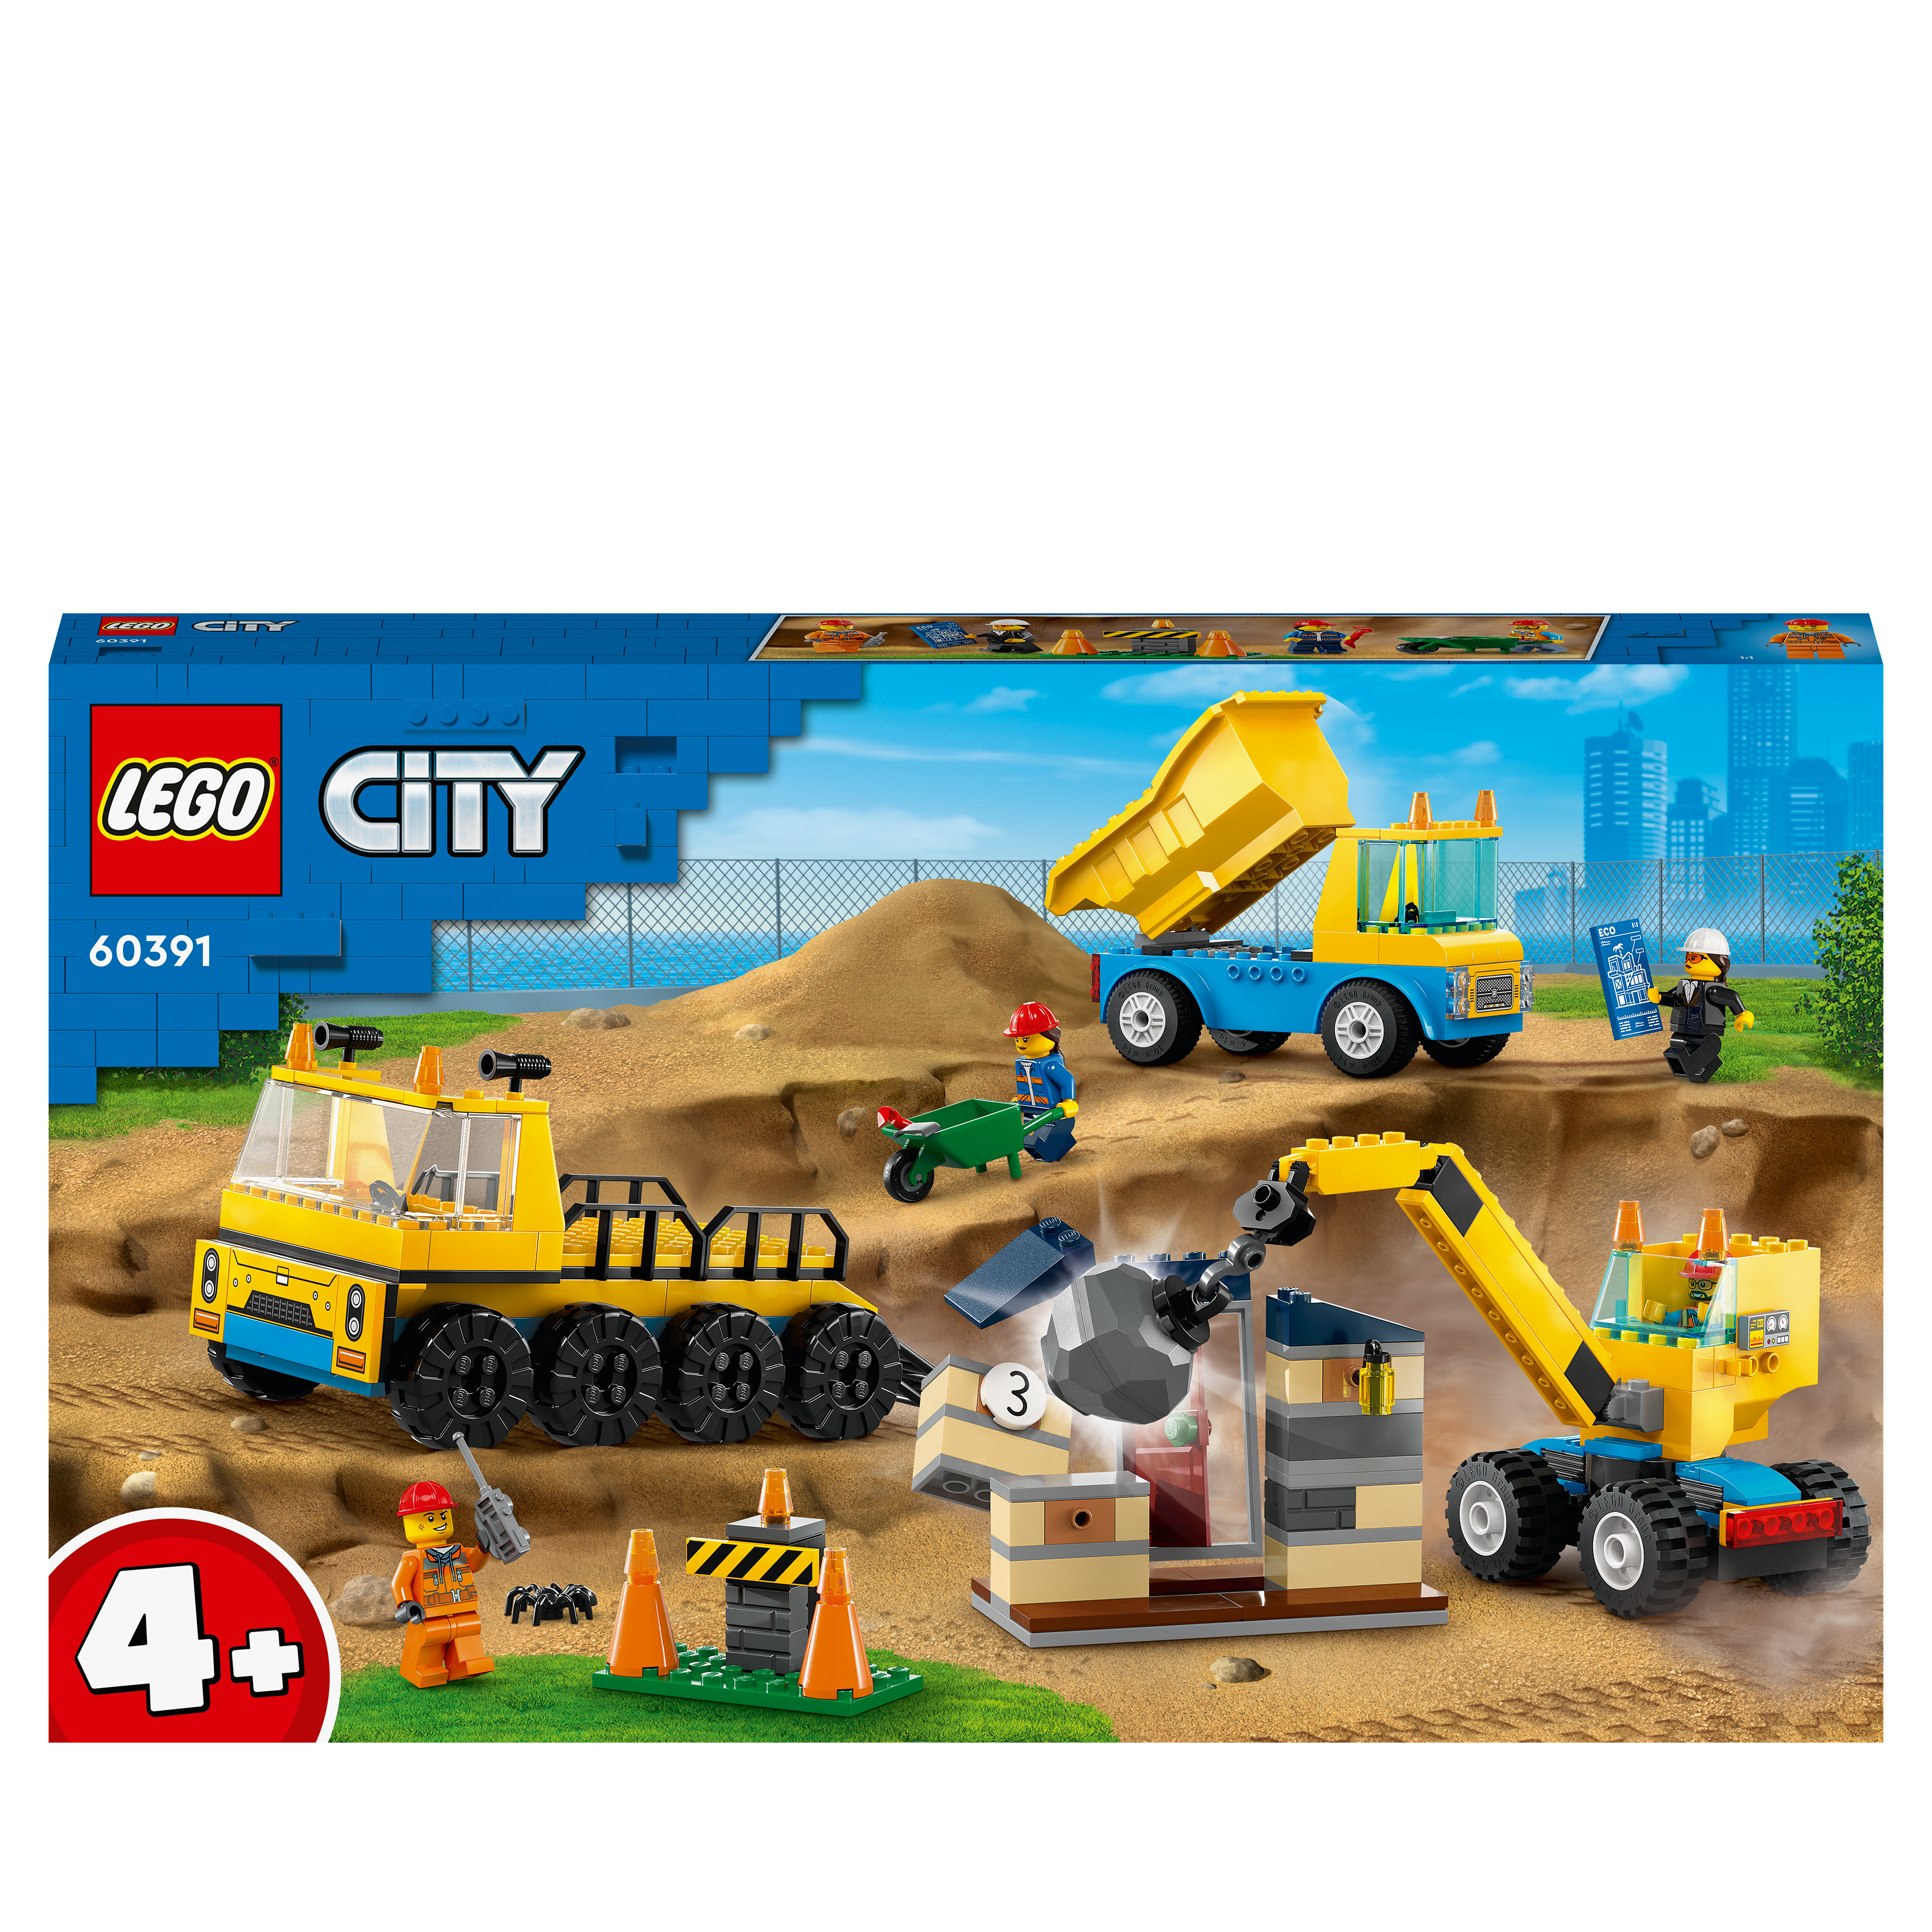 mit Baufahrzeuge Abrissbirne 60391 LEGO und Kran City Bausatz, Mehrfarbig